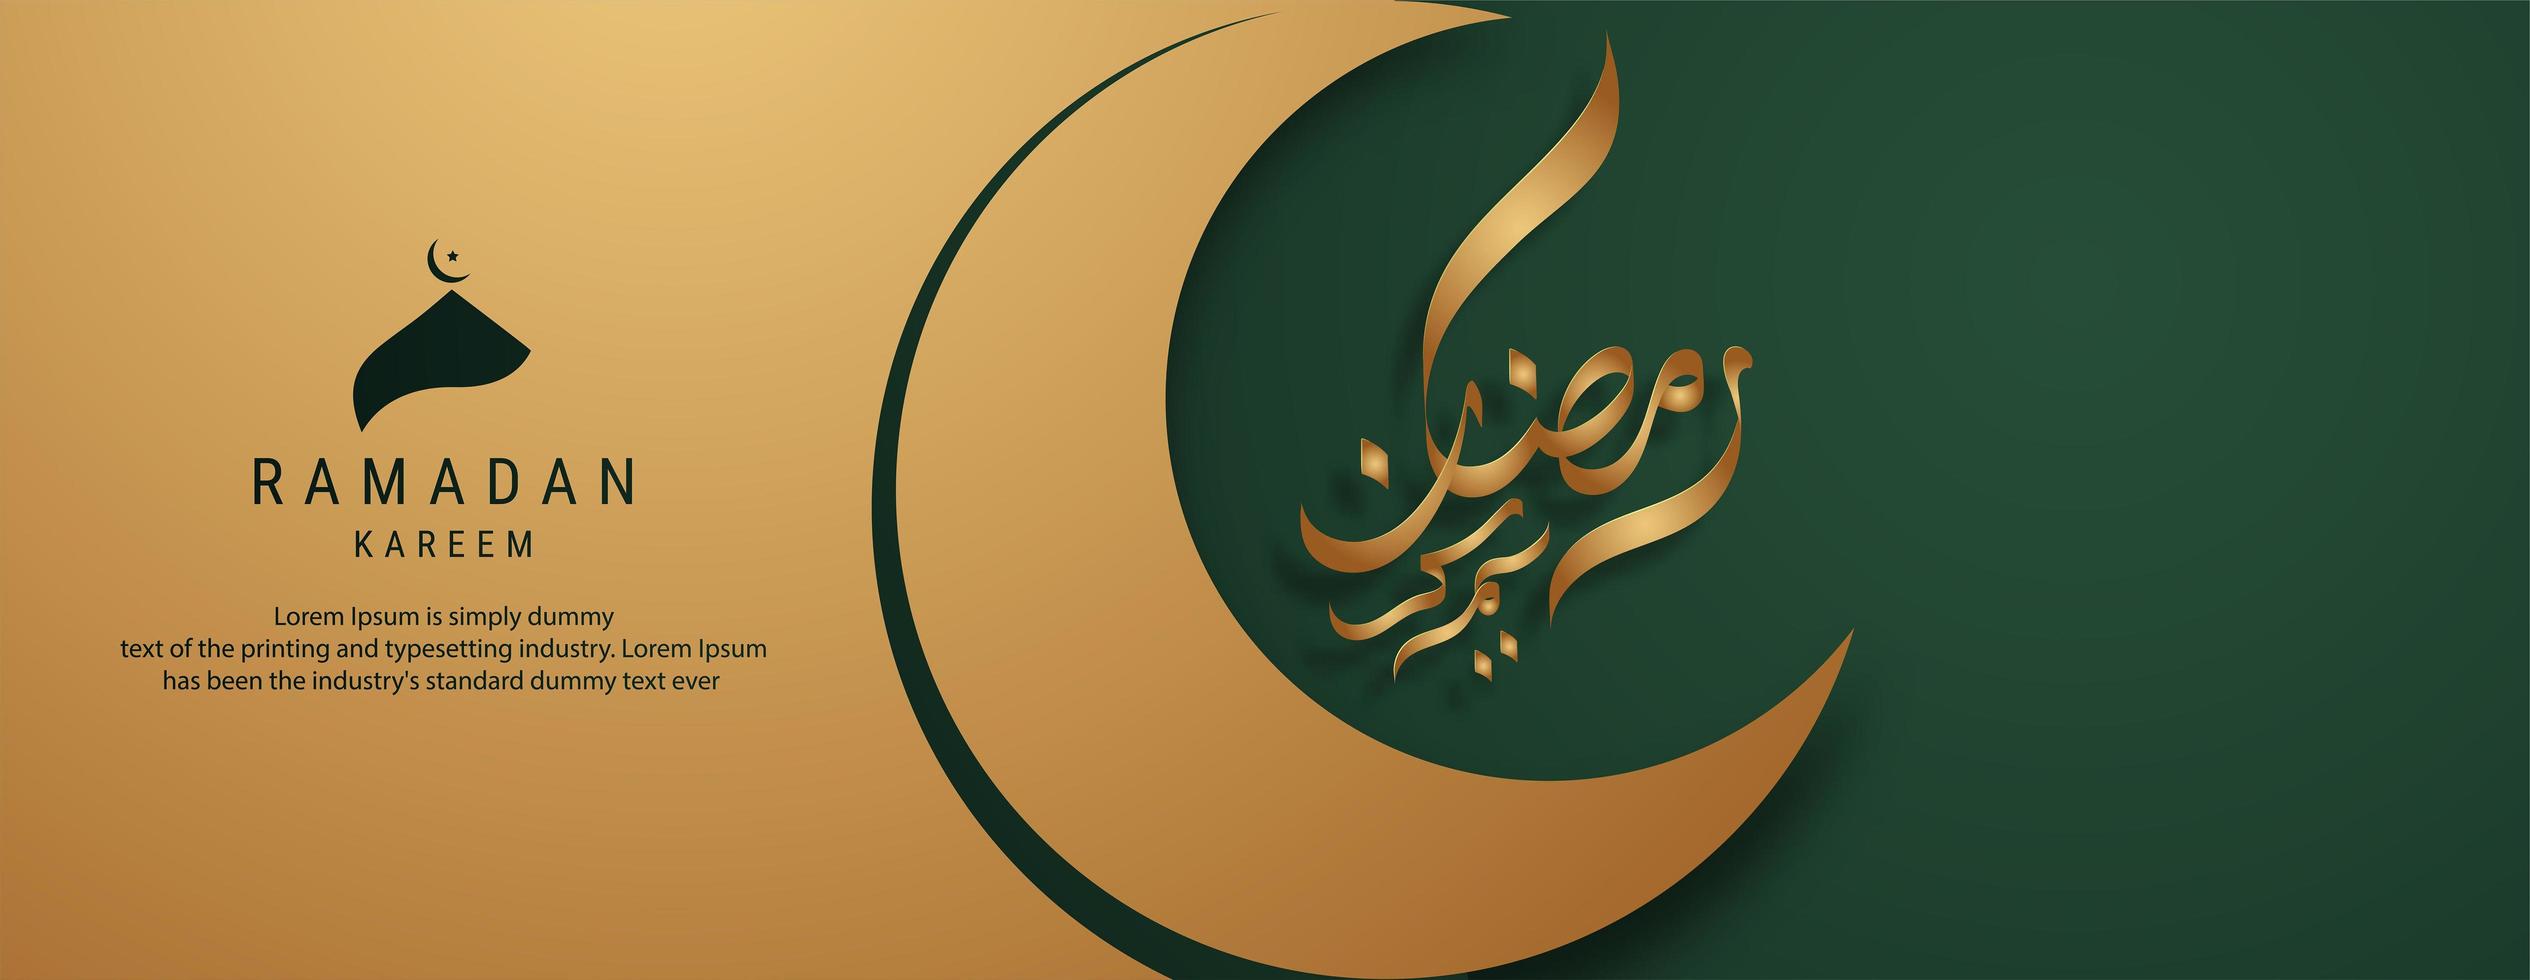 design de banner do ramadan kareem vetor